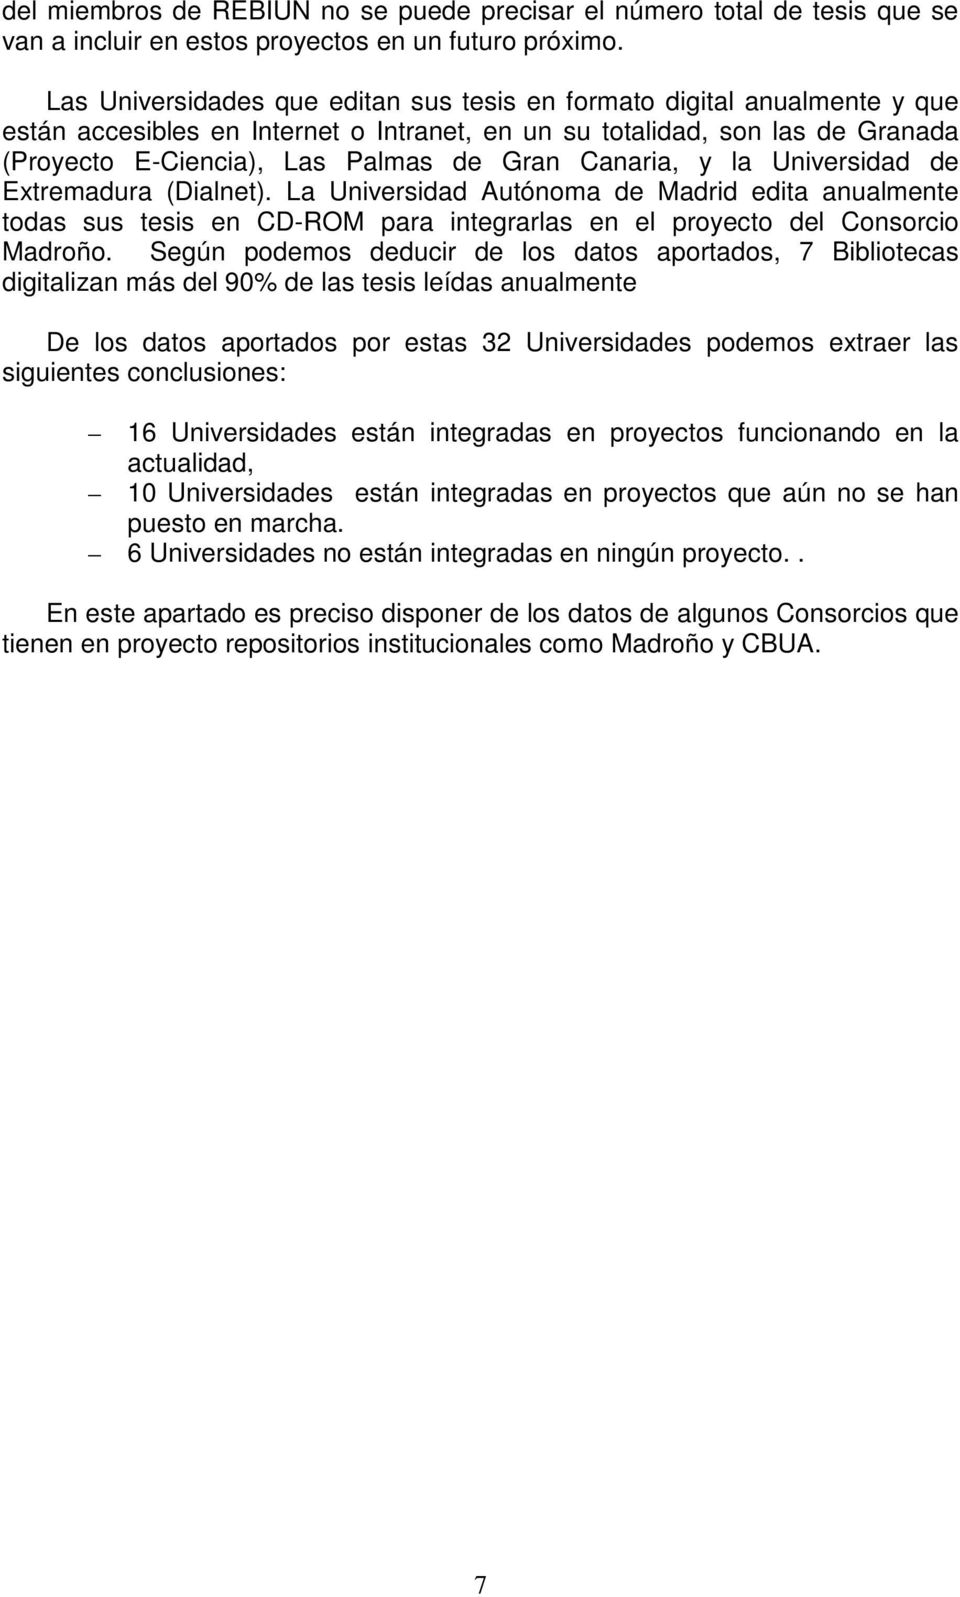 Canaria, y la Universidad de Extremadura (Dialnet). La Universidad Autónoma de Madrid edita anualmente todas sus tesis en CD-ROM para integrarlas en el proyecto del Consorcio Madroño.